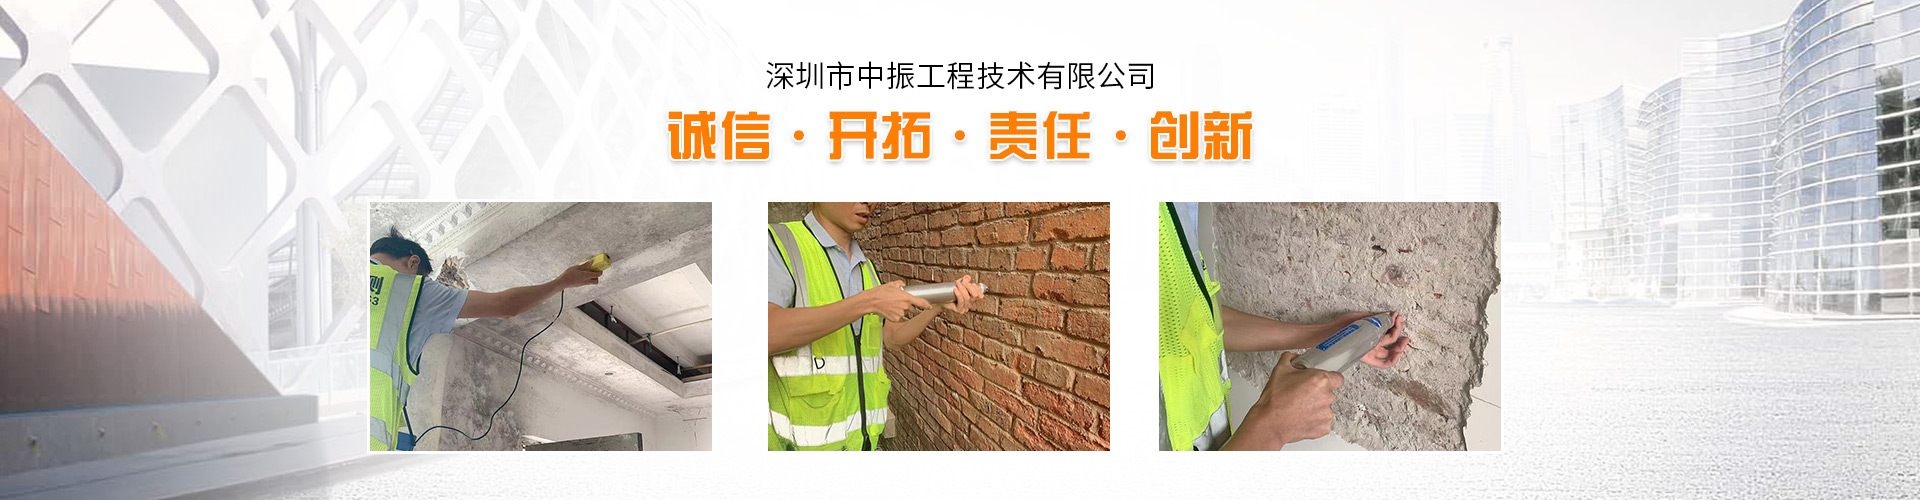 广州市天河区各类厂房安全检测鉴定机构